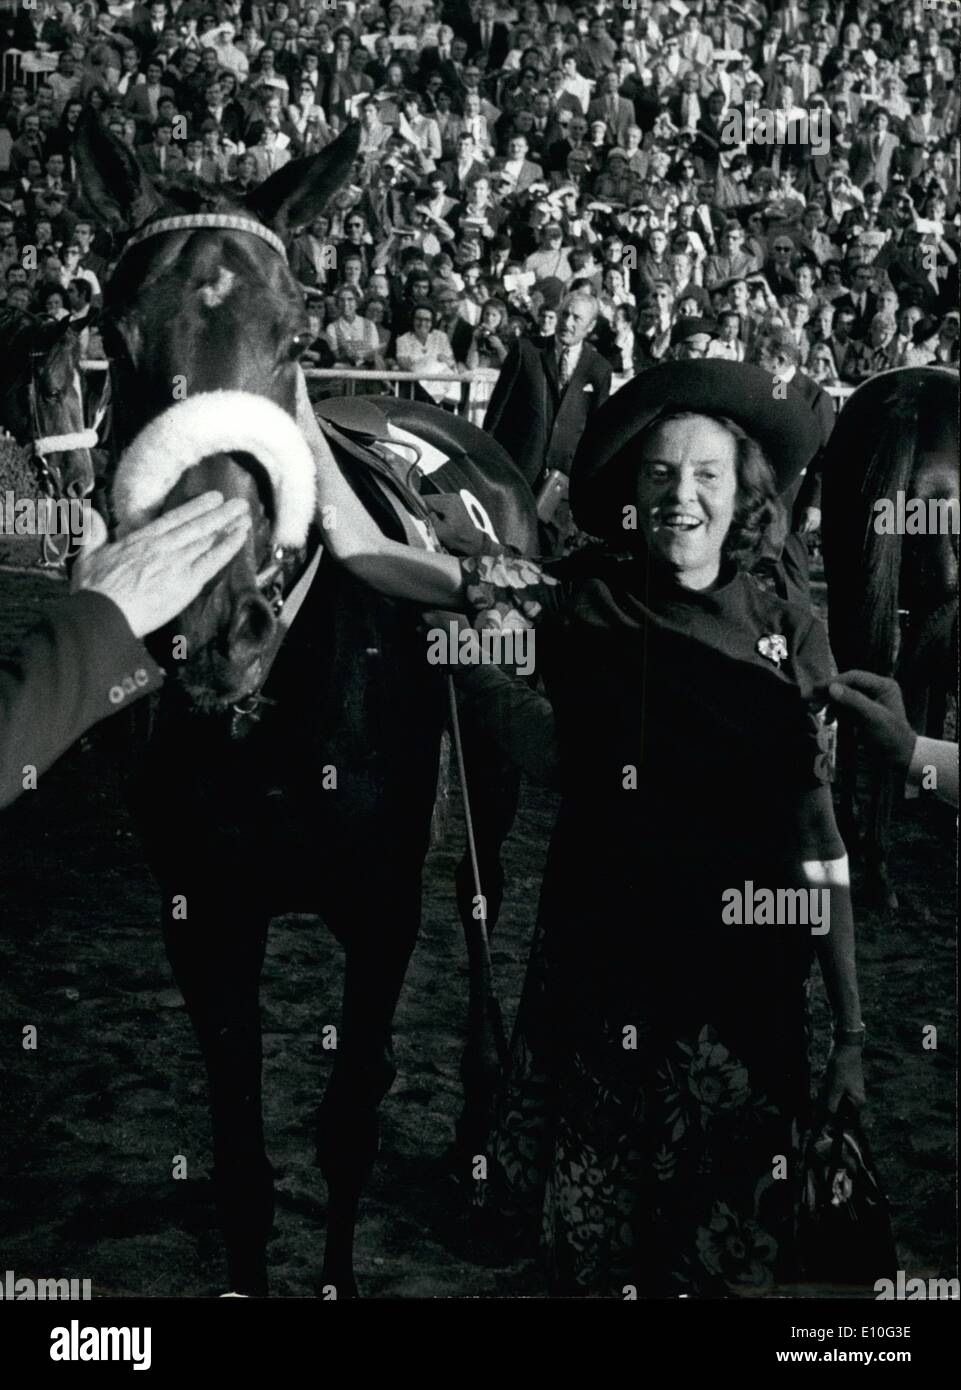 10 octobre 1972 - 'San San San' remporte le prix Arc de Triomphe : photos de San San (no 18) monté par Freddy Head gagnant le célèbre événement de course le Prix de l'Arc de Triomphe, à Longchamp hier. Yves Saint-Martin, circonscription de rescousse (non 17) ane out seconde. Banque D'Images